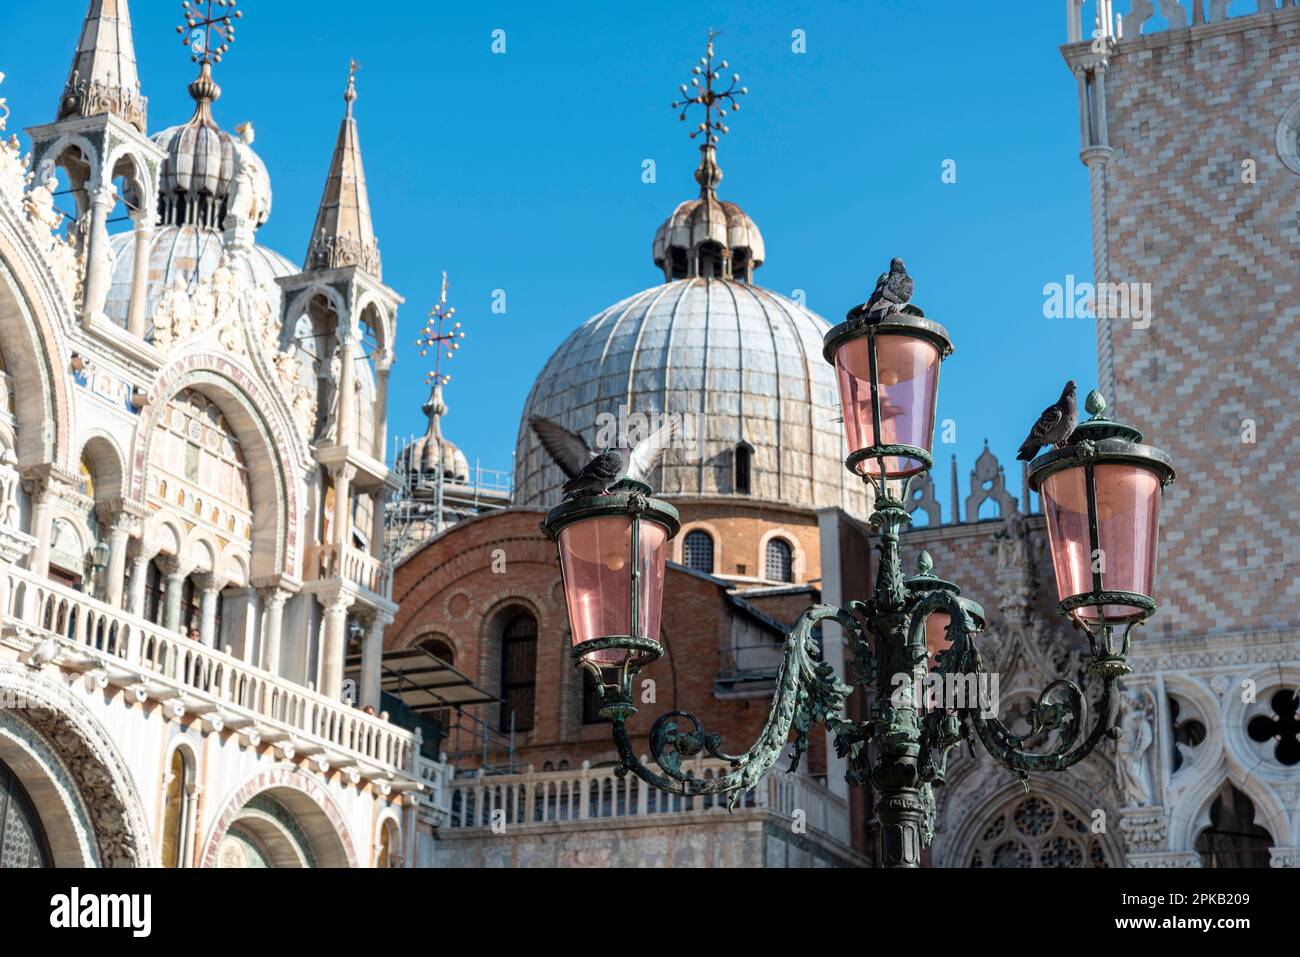 Toit de la basilique à la place Saint-Marc, Venise, Italie Banque D'Images